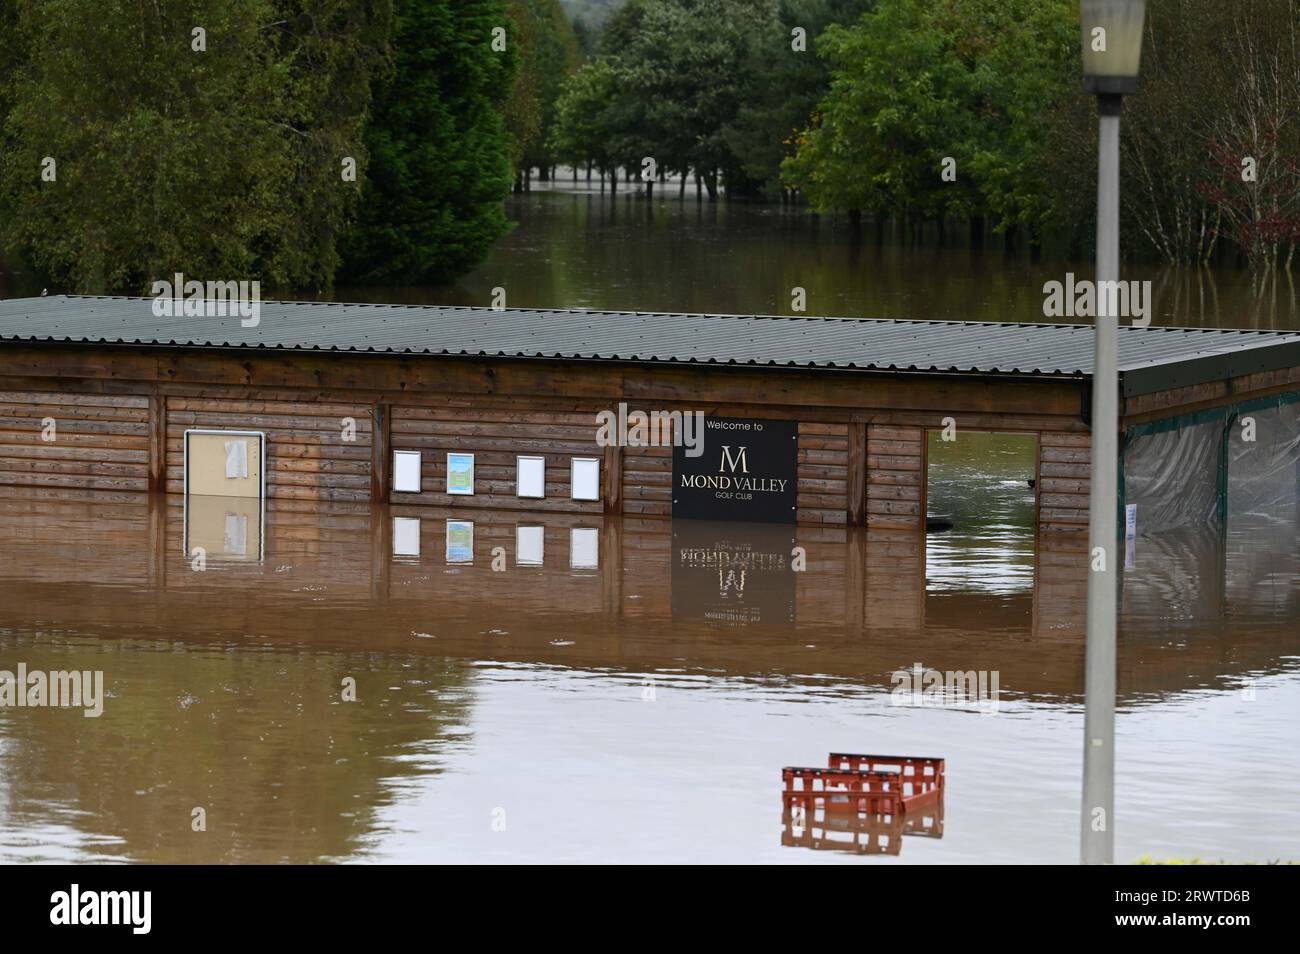 Swansea, le 20 septembre 2023, inondation la police météorologique britannique a fermé les routes autour du club de golf de Mond Valley près de Swansea après de fortes pluies dans la région ont causé des inondations. Un conducteur de camionnette a été laissé coincé après avoir essayé de traverser l'eau. Banque D'Images